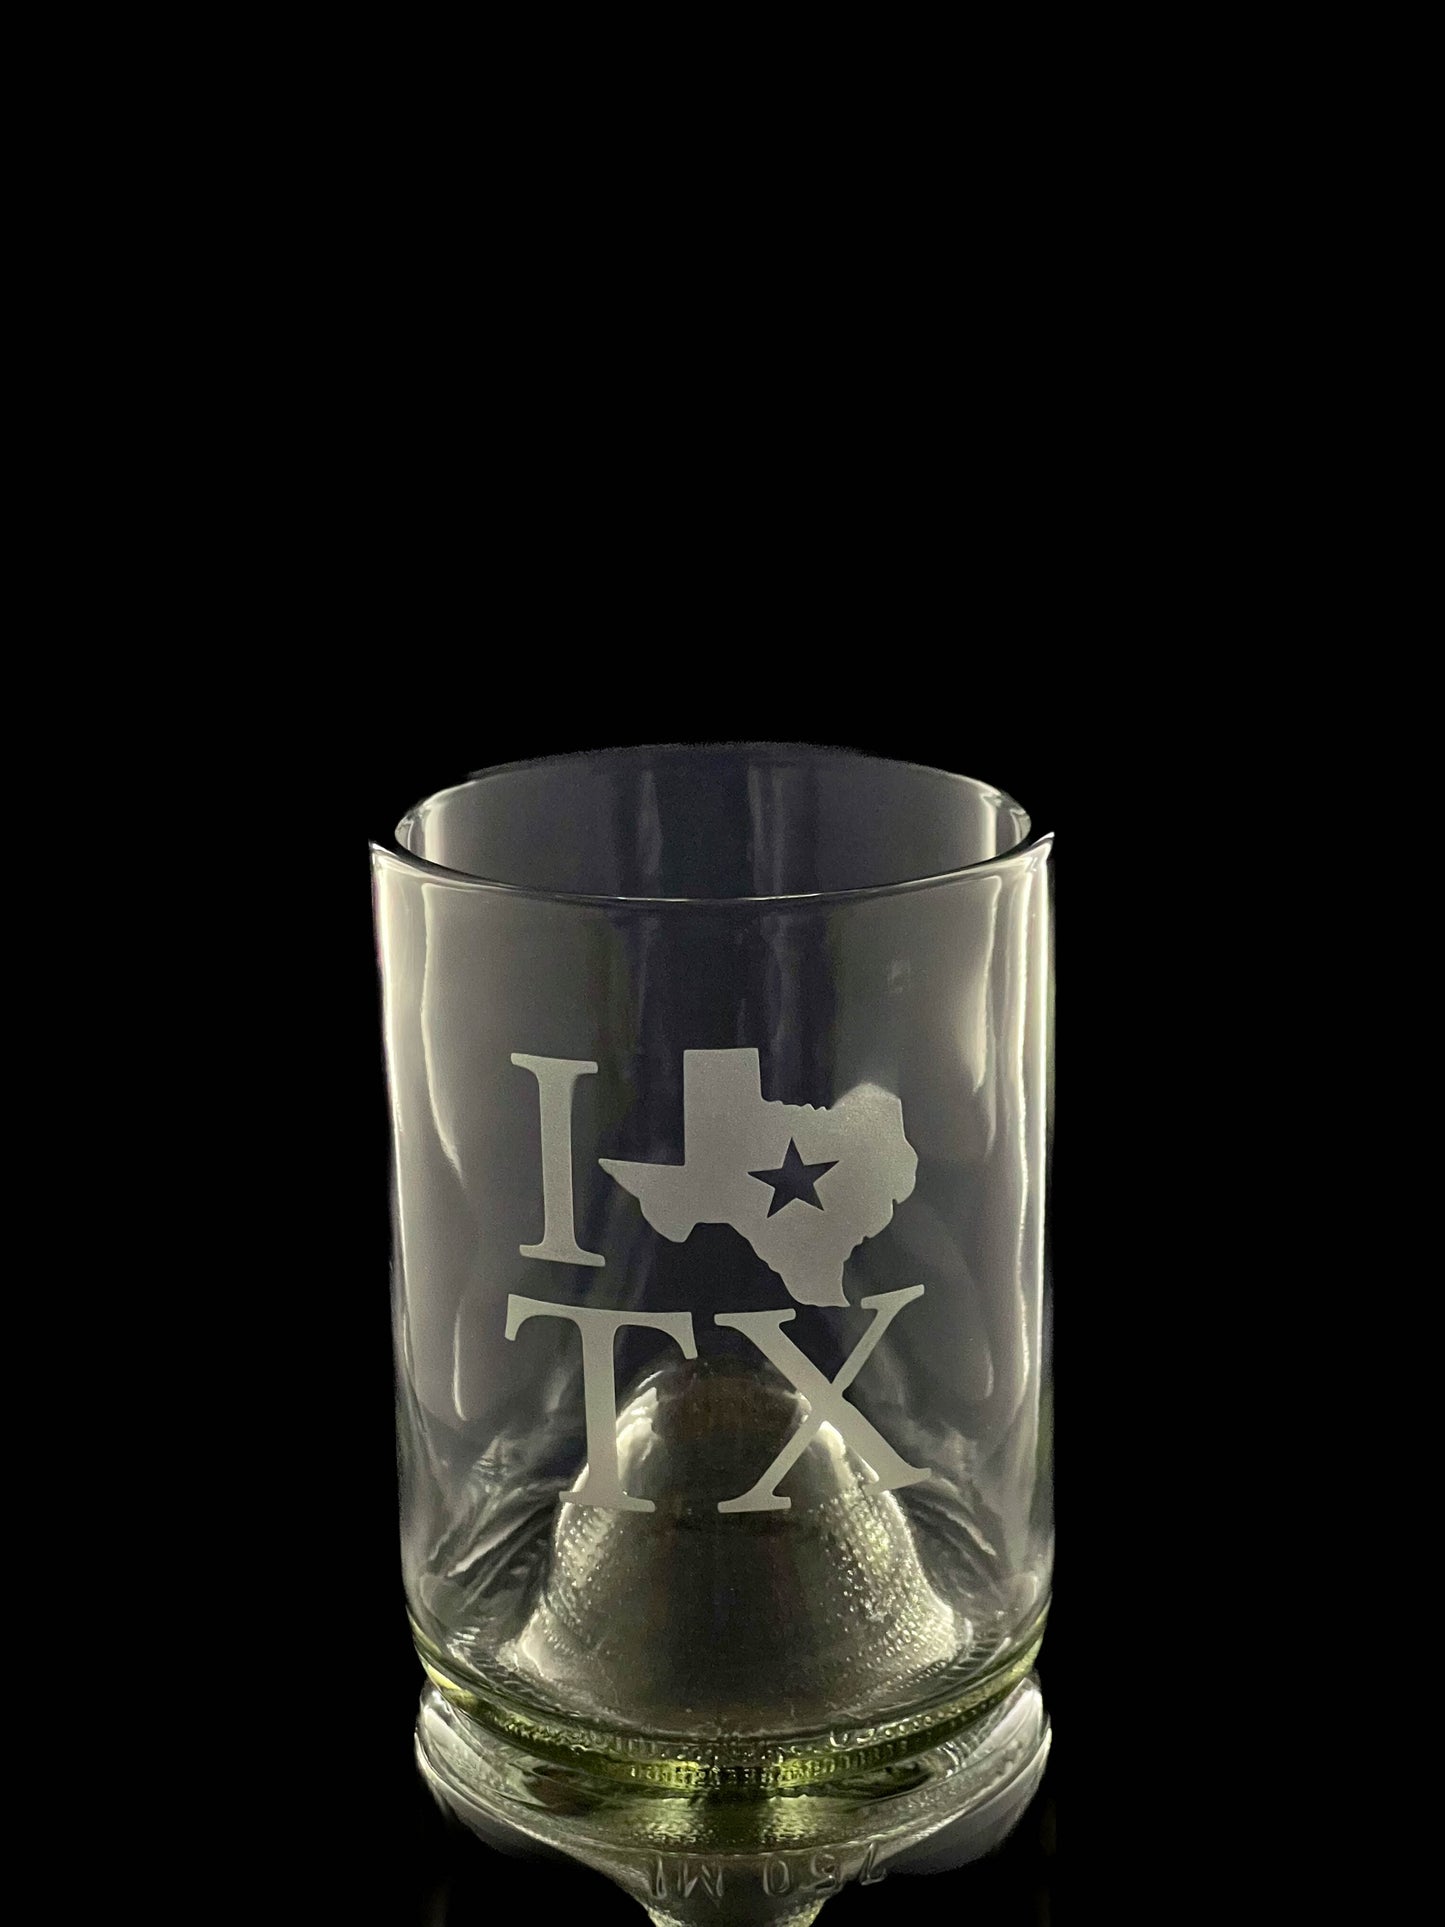 I Love Texas Wine Bottle Drinking Glasses - Set of 2